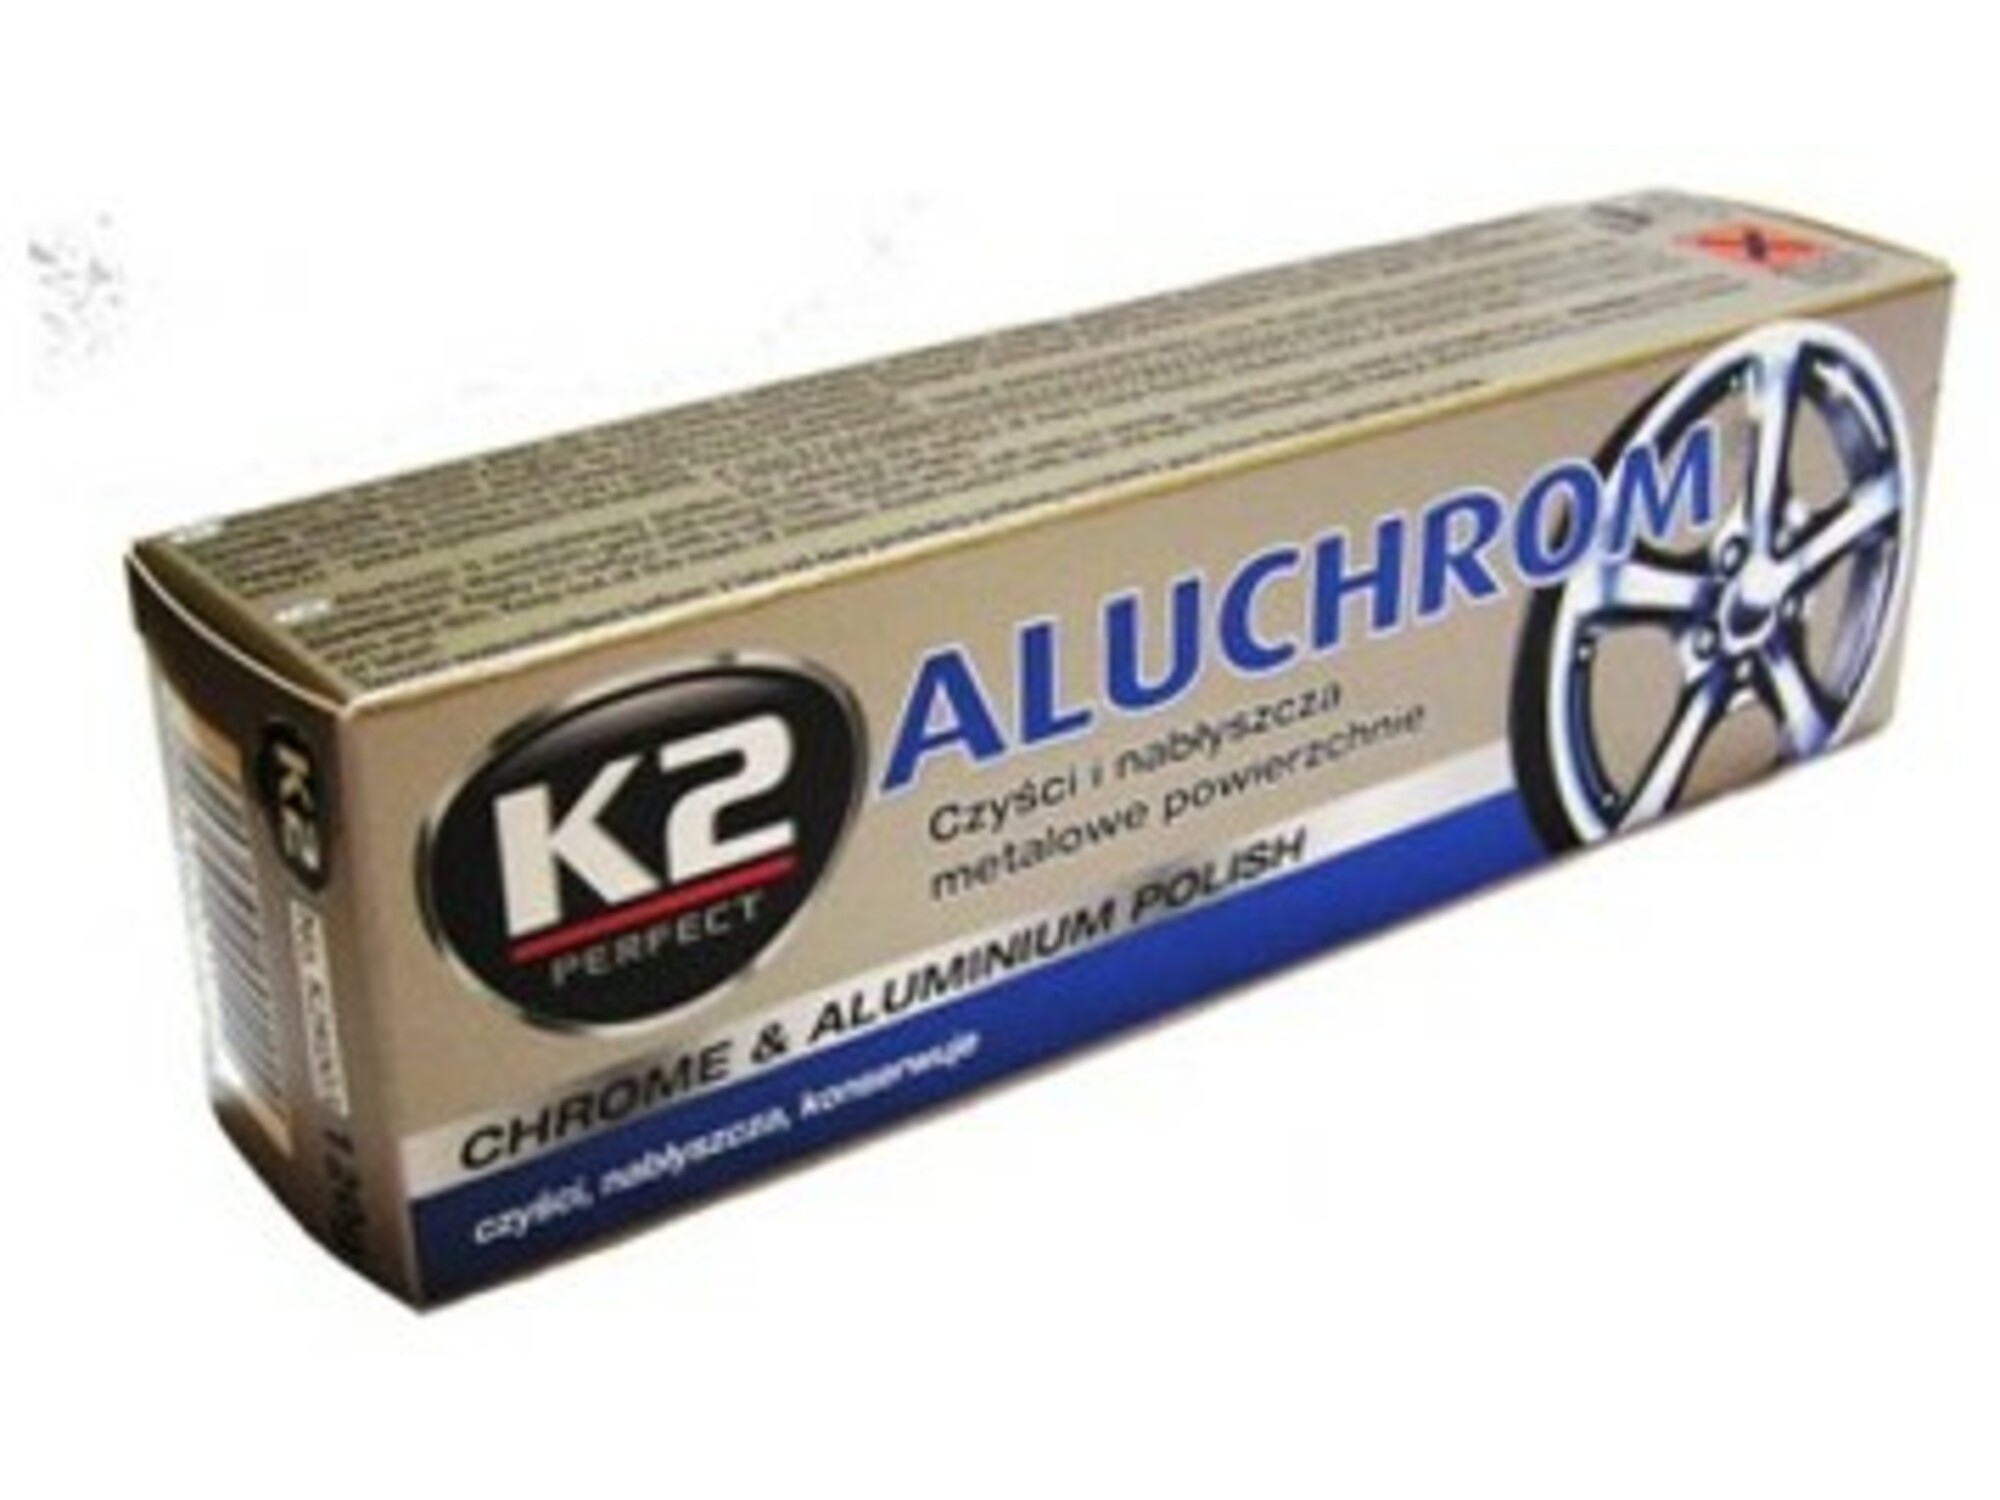 K2 AUTO CARE pasta za čiščenje in poliranje Aluchrom - Metal polish